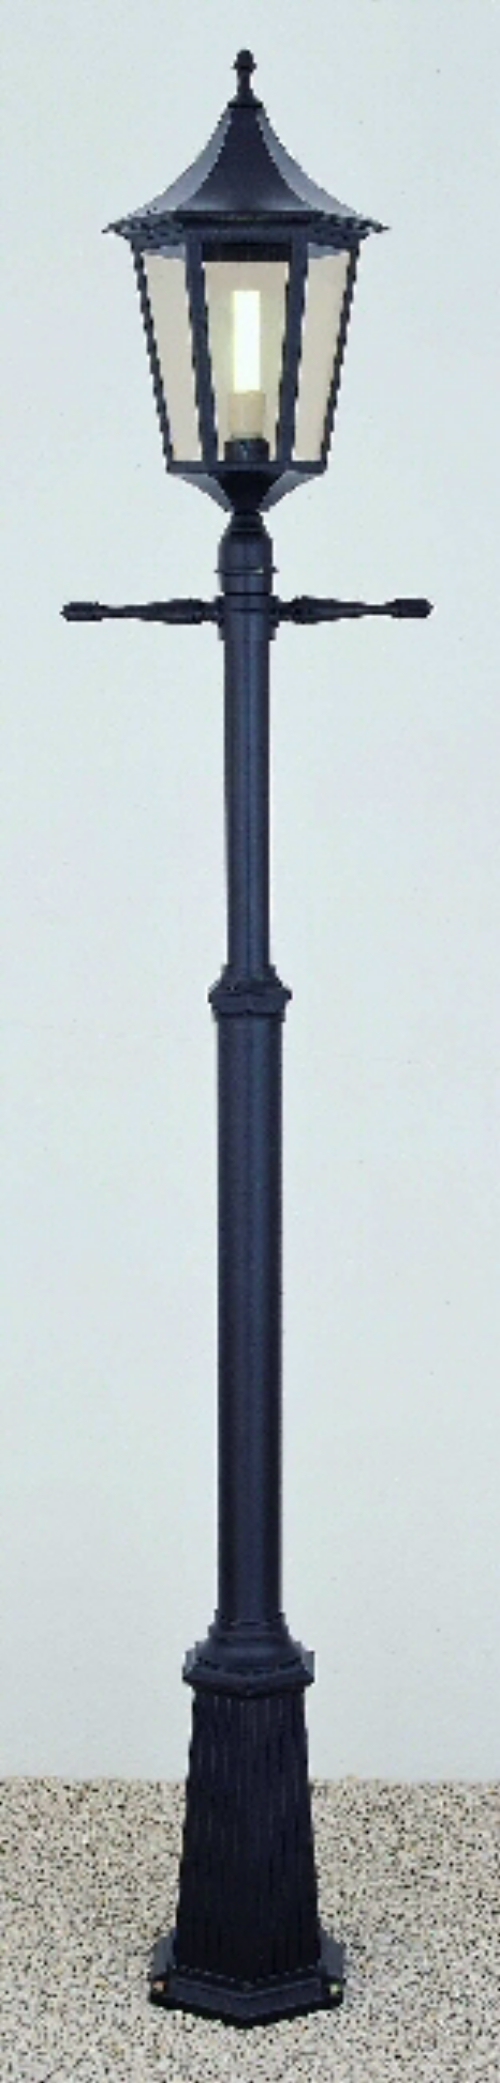 Franklite Italian matt black die-cast aluminium lantern